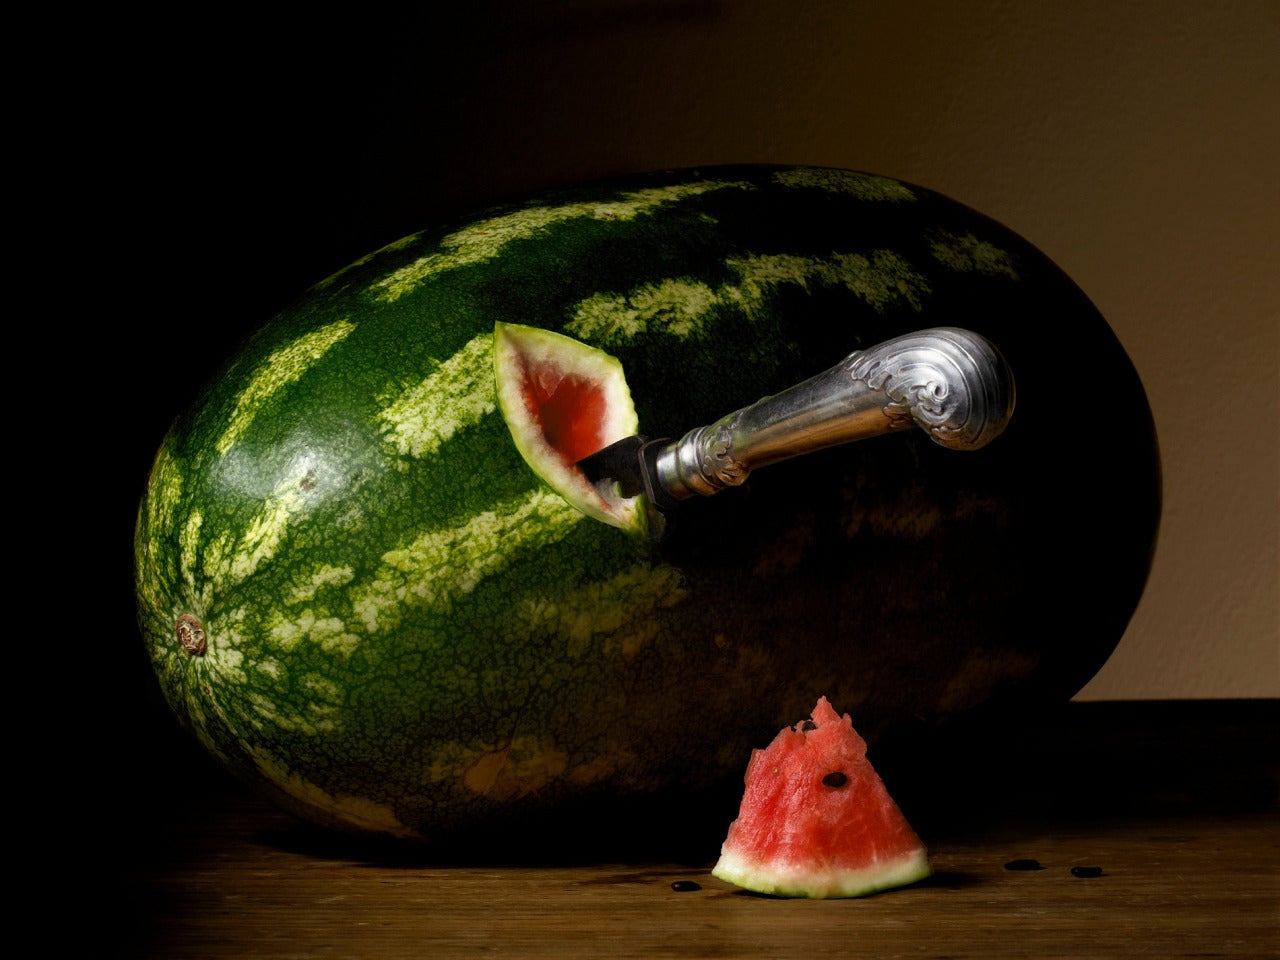 The First Cut von Robyn Stacey zeigt eine große Wassermelone auf einem Holztisch in diesem dramatisch beleuchteten Stillleben. Der Griff eines silbernen Messers ragt aus einem Schnitt in der Frucht heraus. Ein Stück Wassermelone liegt neben der